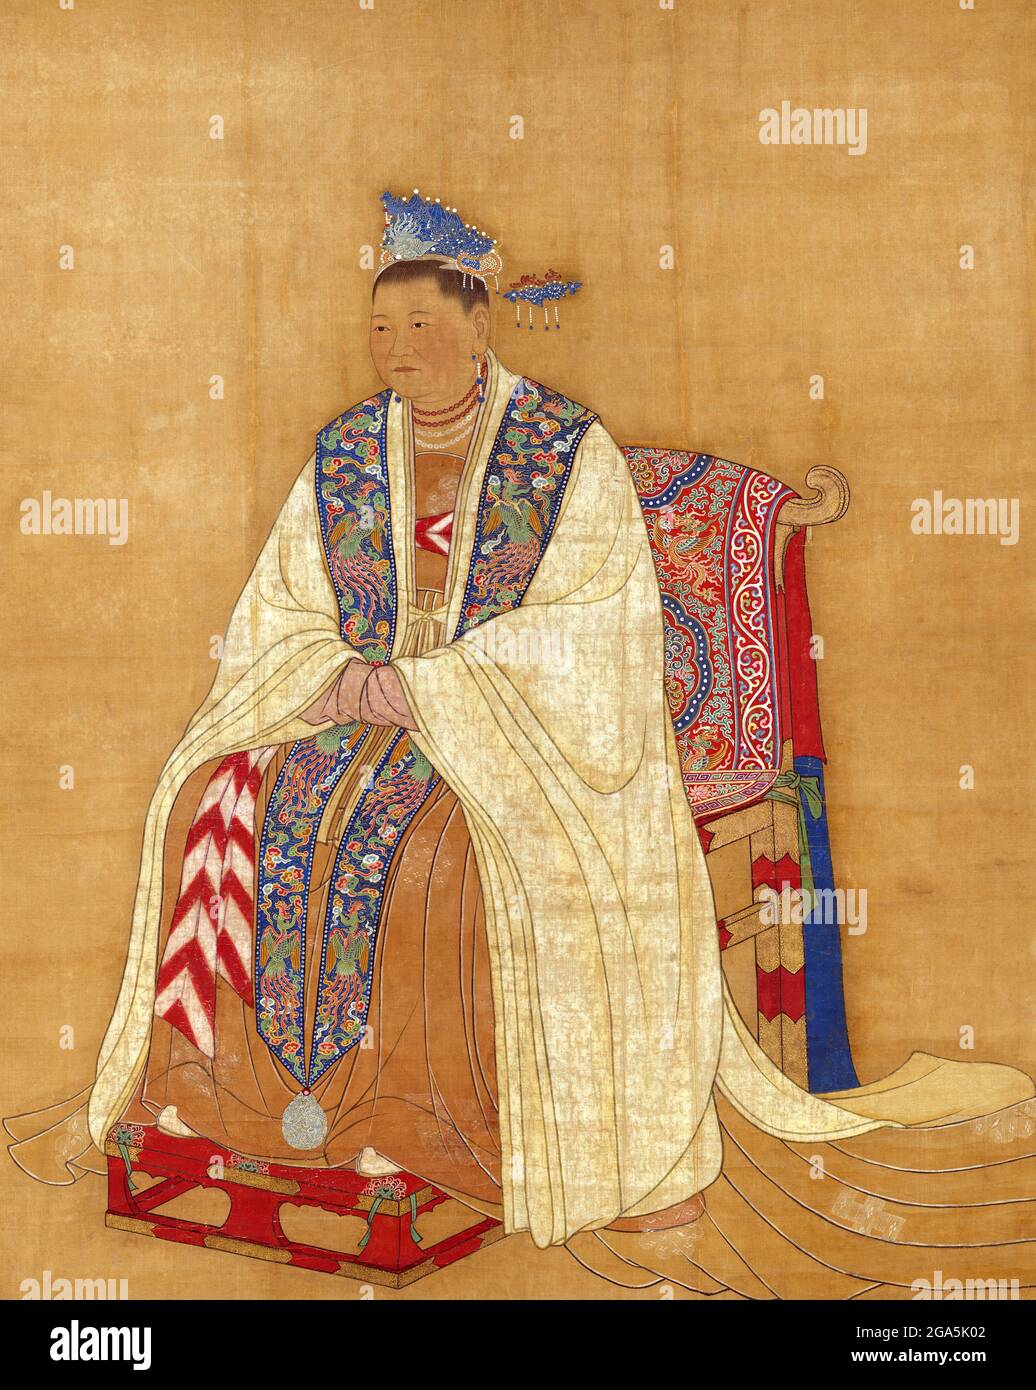 Cina: L'imperatrice Dowager Zhaoxian (902 - 17 luglio 961), madre dei primi due imperatori della canzone Taizu e Taizong. Pittura a spirale appesa, dinastia Song (960-1279). Lady Du, formalmente conosciuta come Zhaoxian, era una imperatrice dowager della dinastia Song. Era la moglie del generale Zhao Hongyin e madre dei primi due imperatori della canzone Taizu e Taizong. L'imperatore Taizong rivendicò la legittimità al trono attraverso la sua apparente volontà, presumibilmente suggellato in una mensola d'oro alla sua morte, anche se molti storici credono di aver costruito questo. Foto Stock